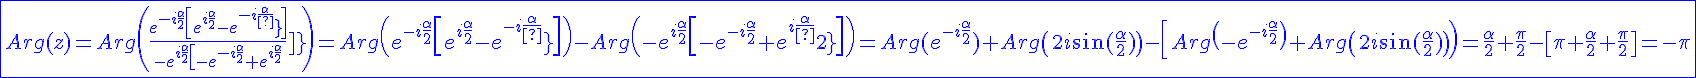 4$\blue \fbox{Arg(z)=Arg\(\fr{e^{-i\fr{\alpha}{2}}\[e^{i\fr{\alpha}{2}}-e^{-i\fr{\alpha}{2}}\]}{-e^{i\fr{\alpha}{2}}\[-e^{-i\fr{\alpha}{2}}+e^{i\fr{\alpha}{2}}\]}\)=Arg\(e^{-i\fr{\alpha}{2}}\[e^{i\fr{\alpha}{2}}-e^{-i\fr{\alpha}{2}}\]\)-Arg\(-e^{i\fr{\alpha}{2}}\[-e^{-i\fr{\alpha}{2}}+e^{i\fr{\alpha}{2}\]\)=Arg(e^{-i\fr{\alpha}{2}})+Arg\(2i\sin(\fr{\alpha}{2})\)-\[Arg\(-e^{-i\fr{\alpha}{2}}\)+Arg\(2i\sin(\fr{\alpha}{2})\)\)=\fr{\alpha}{2}+\fr{\pi}{2}-\[\pi+\fr{\alpha}{2}+\fr{\pi}{2}\]=-\pi